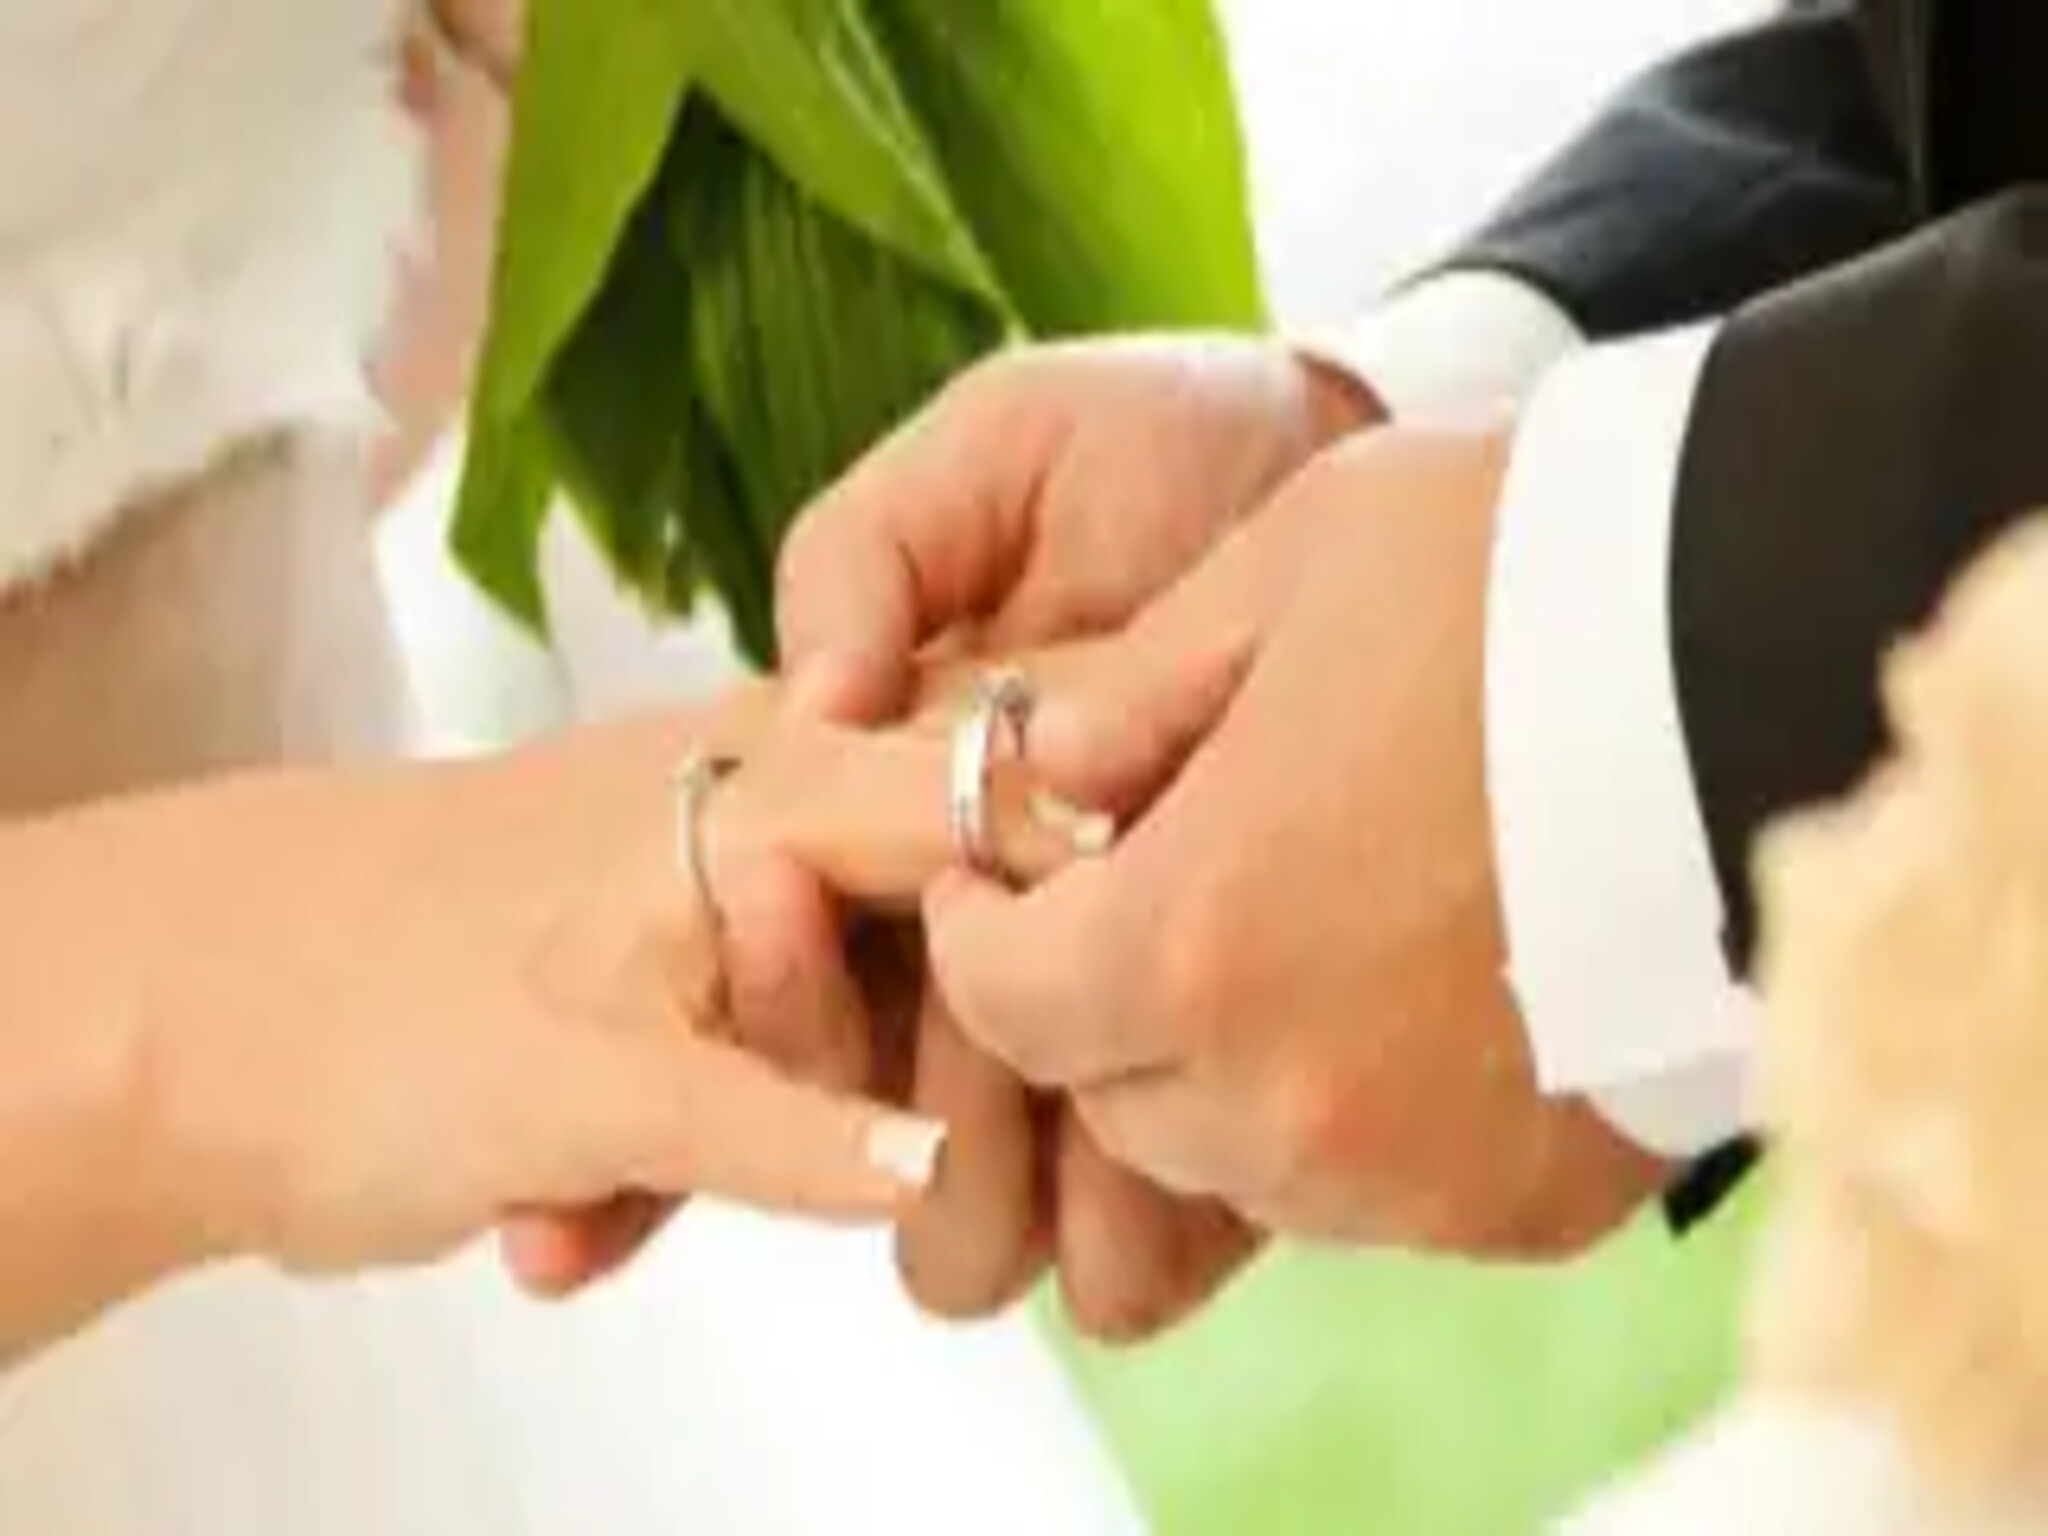 الشروط المطلوبة للحصول على منحة الزواج من التأمينات الاجتماعية  1445